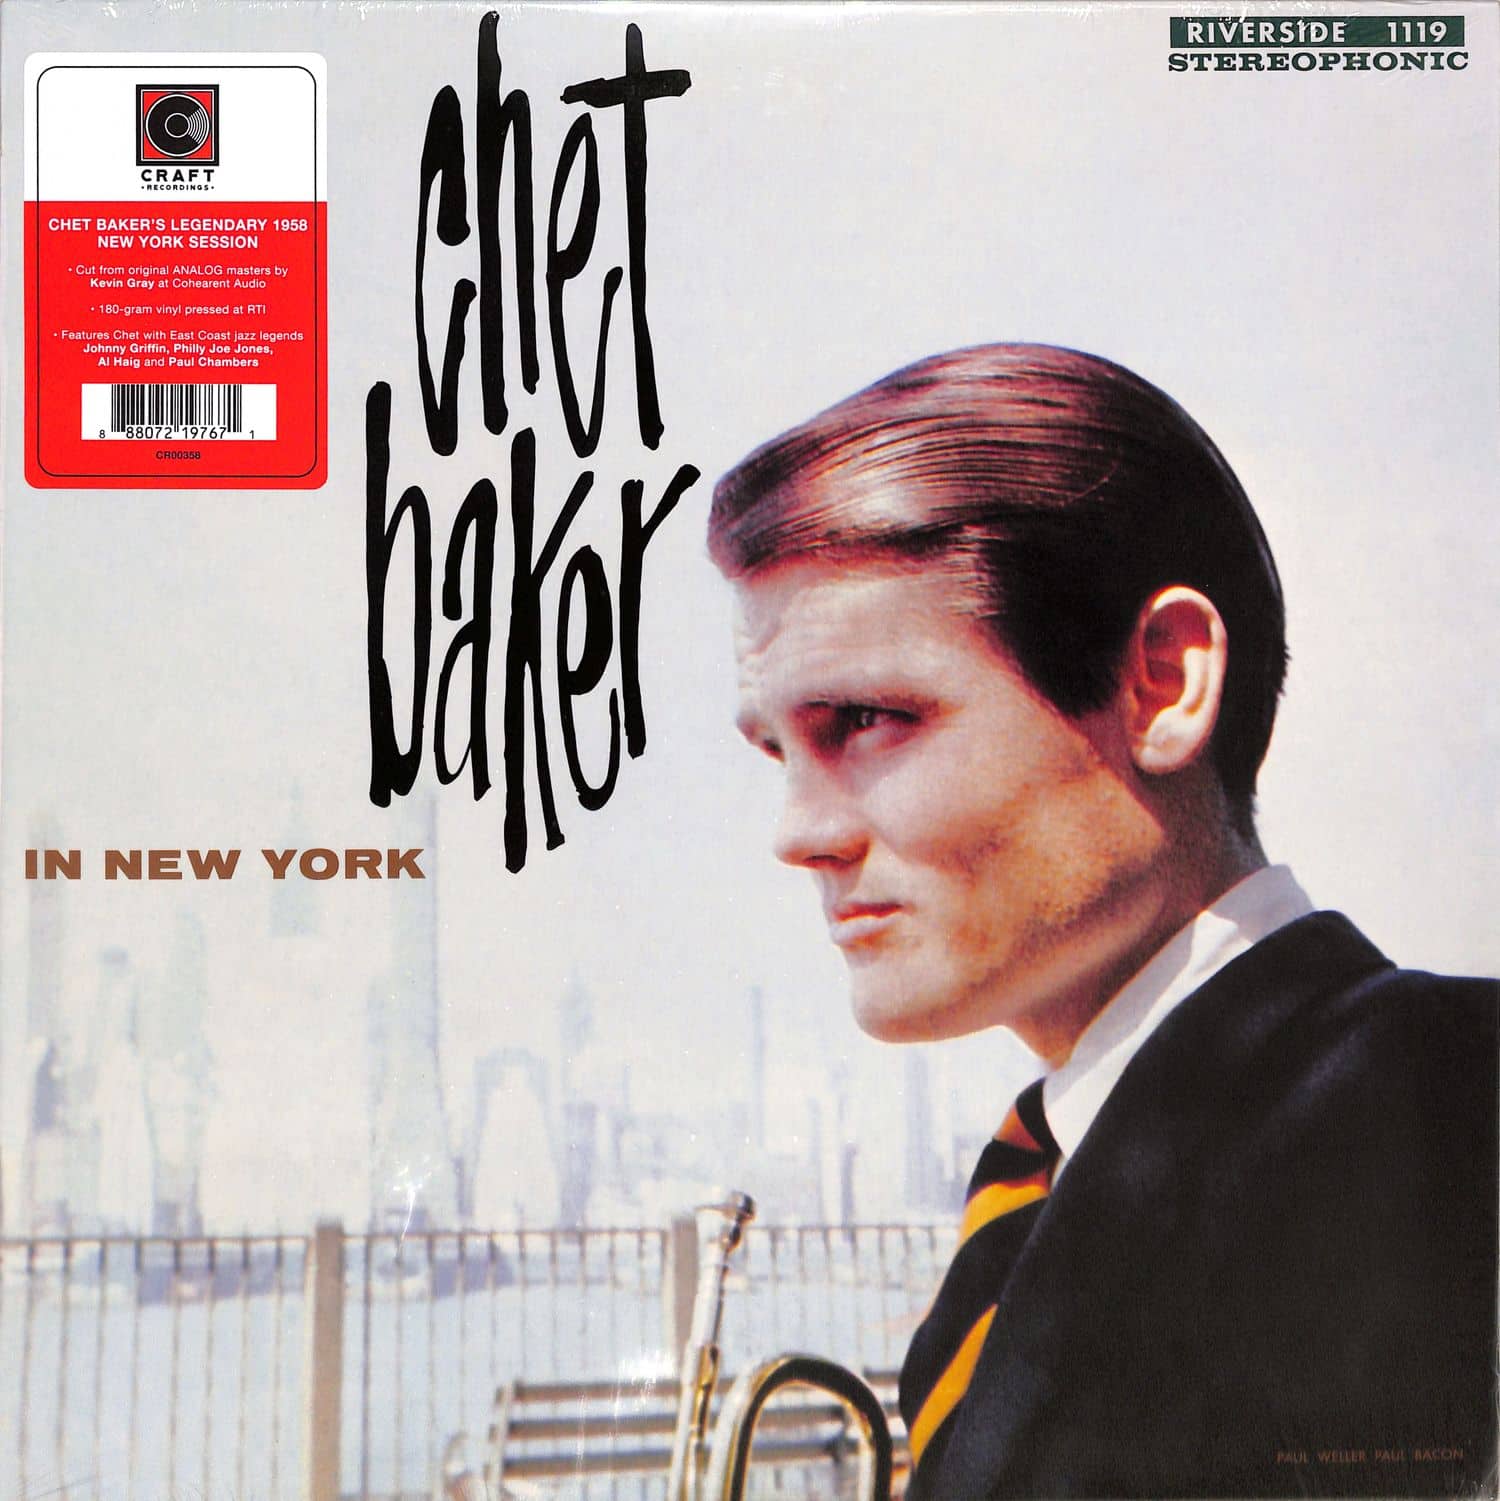 Chet Baker - IN NEW YORK 